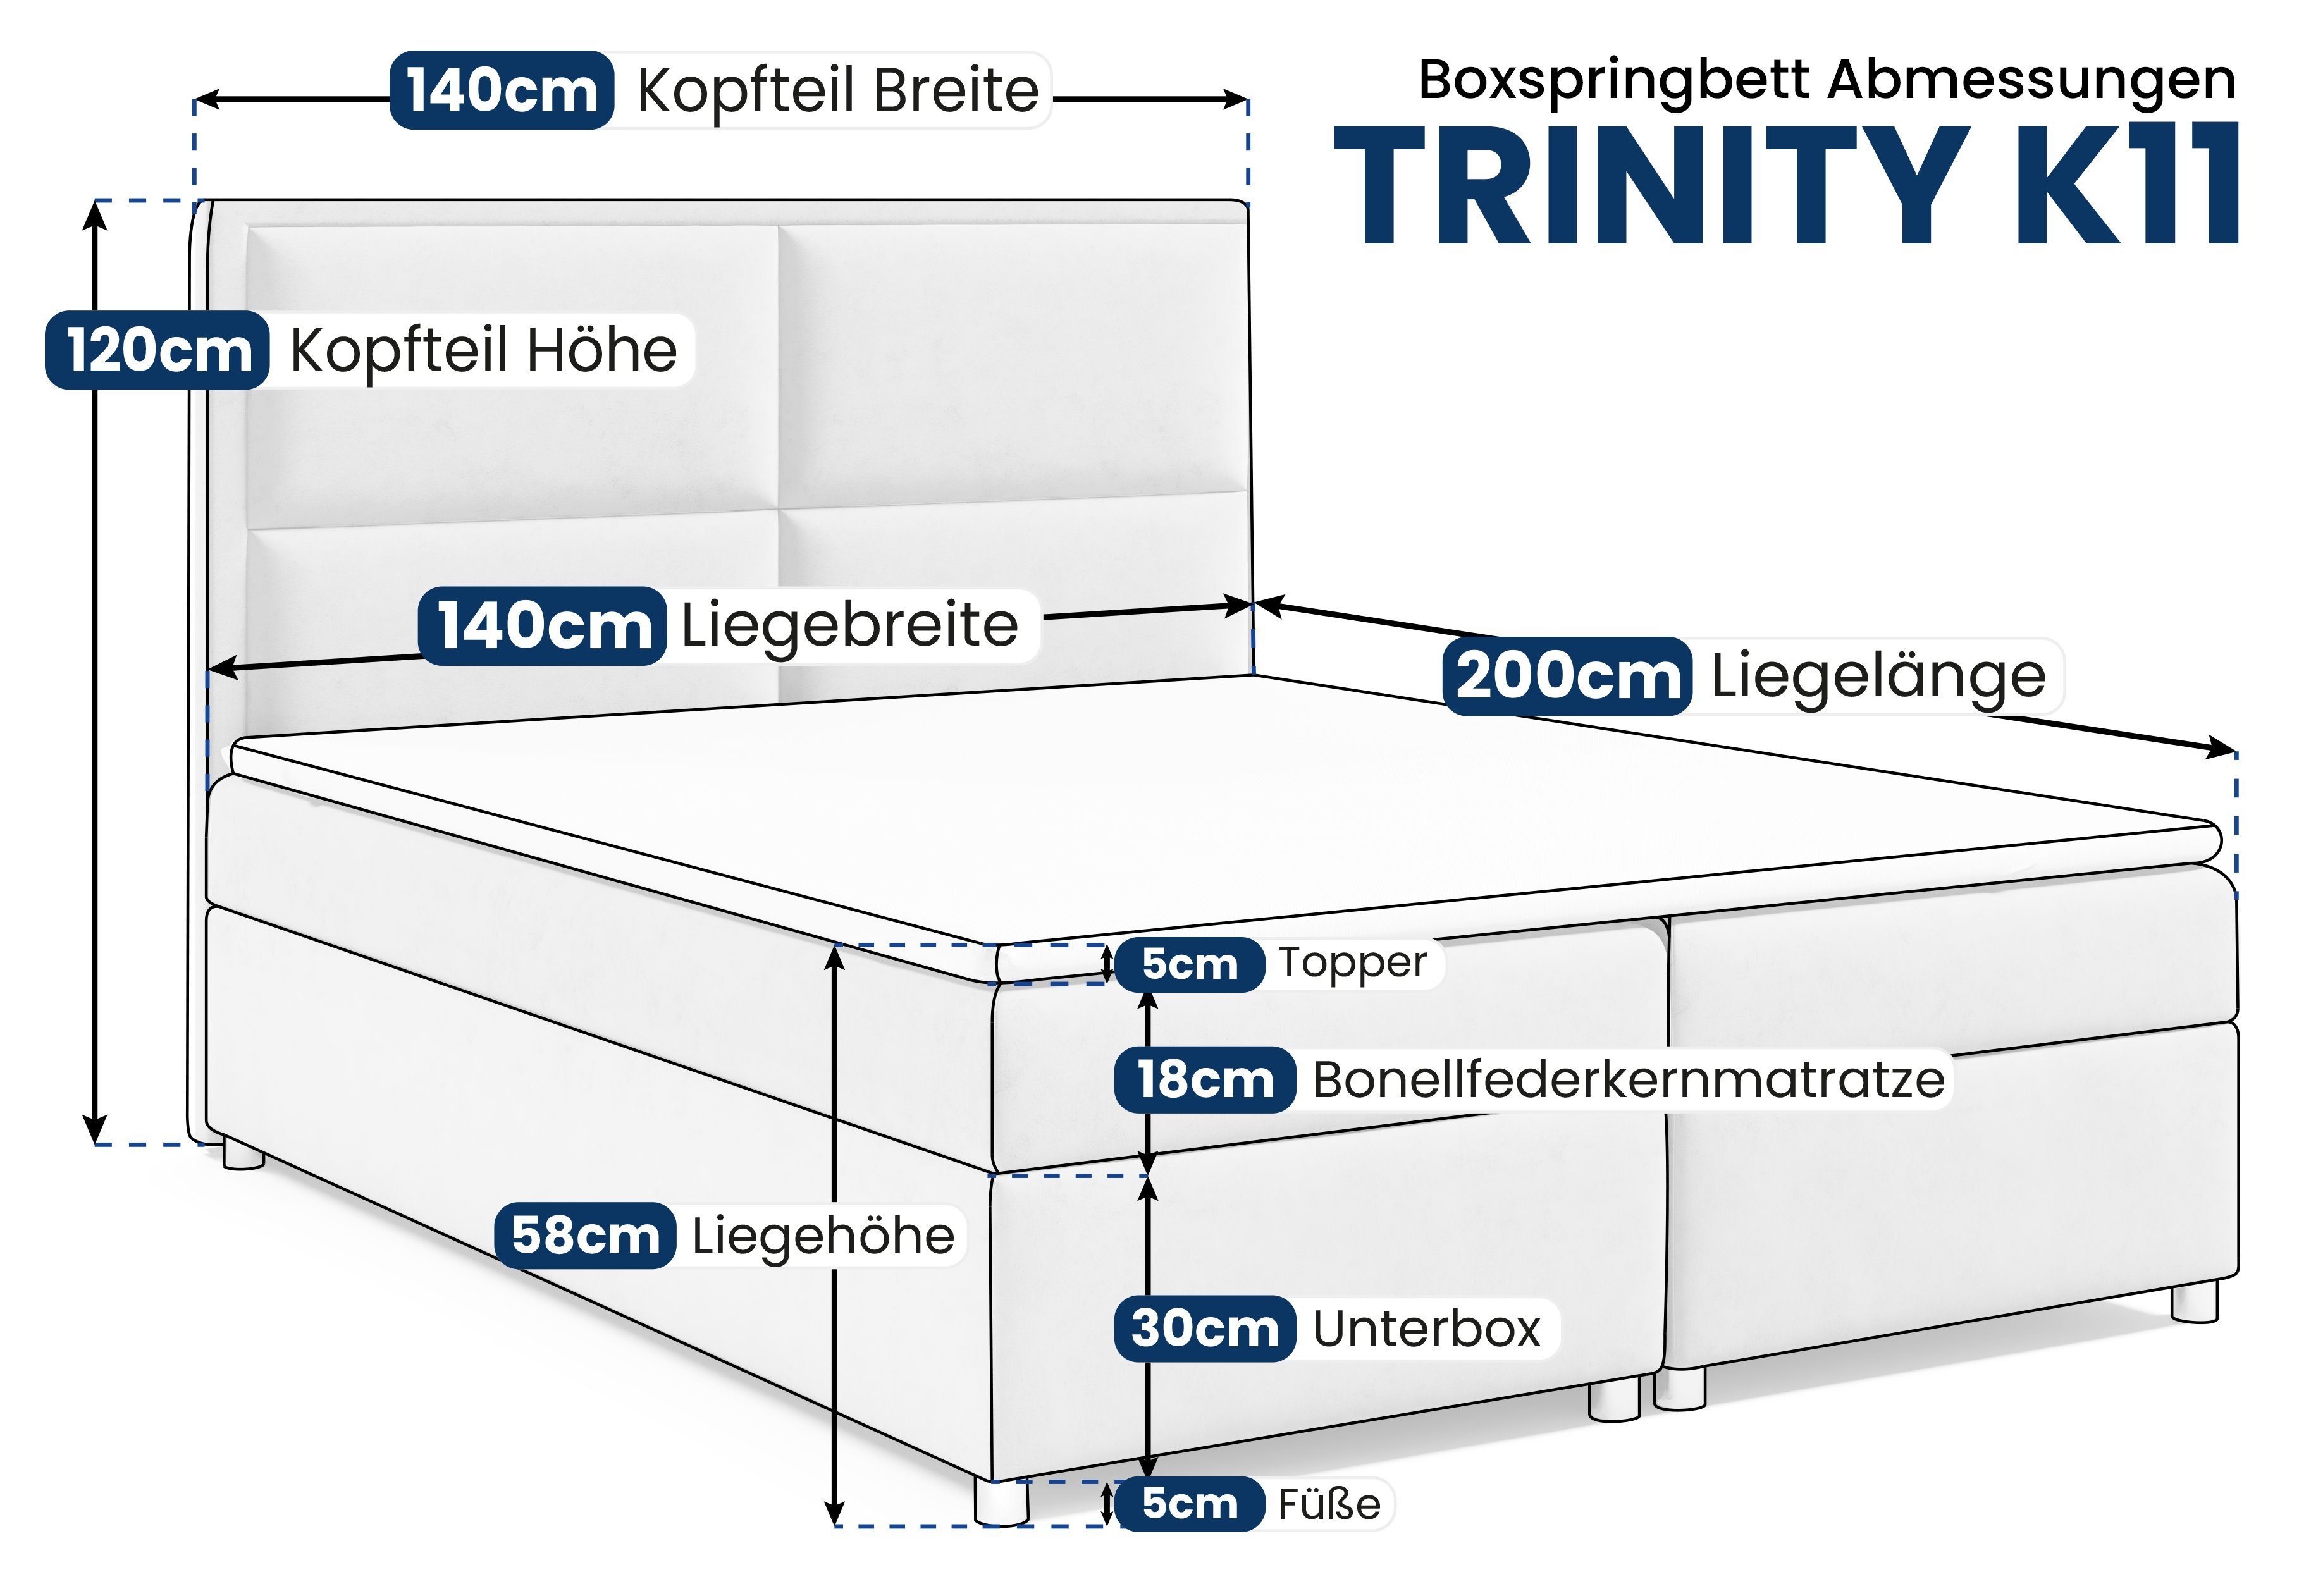 Best for Home Boxspringbett Trinity Topper mit Bettkasten Schwarz K11, und